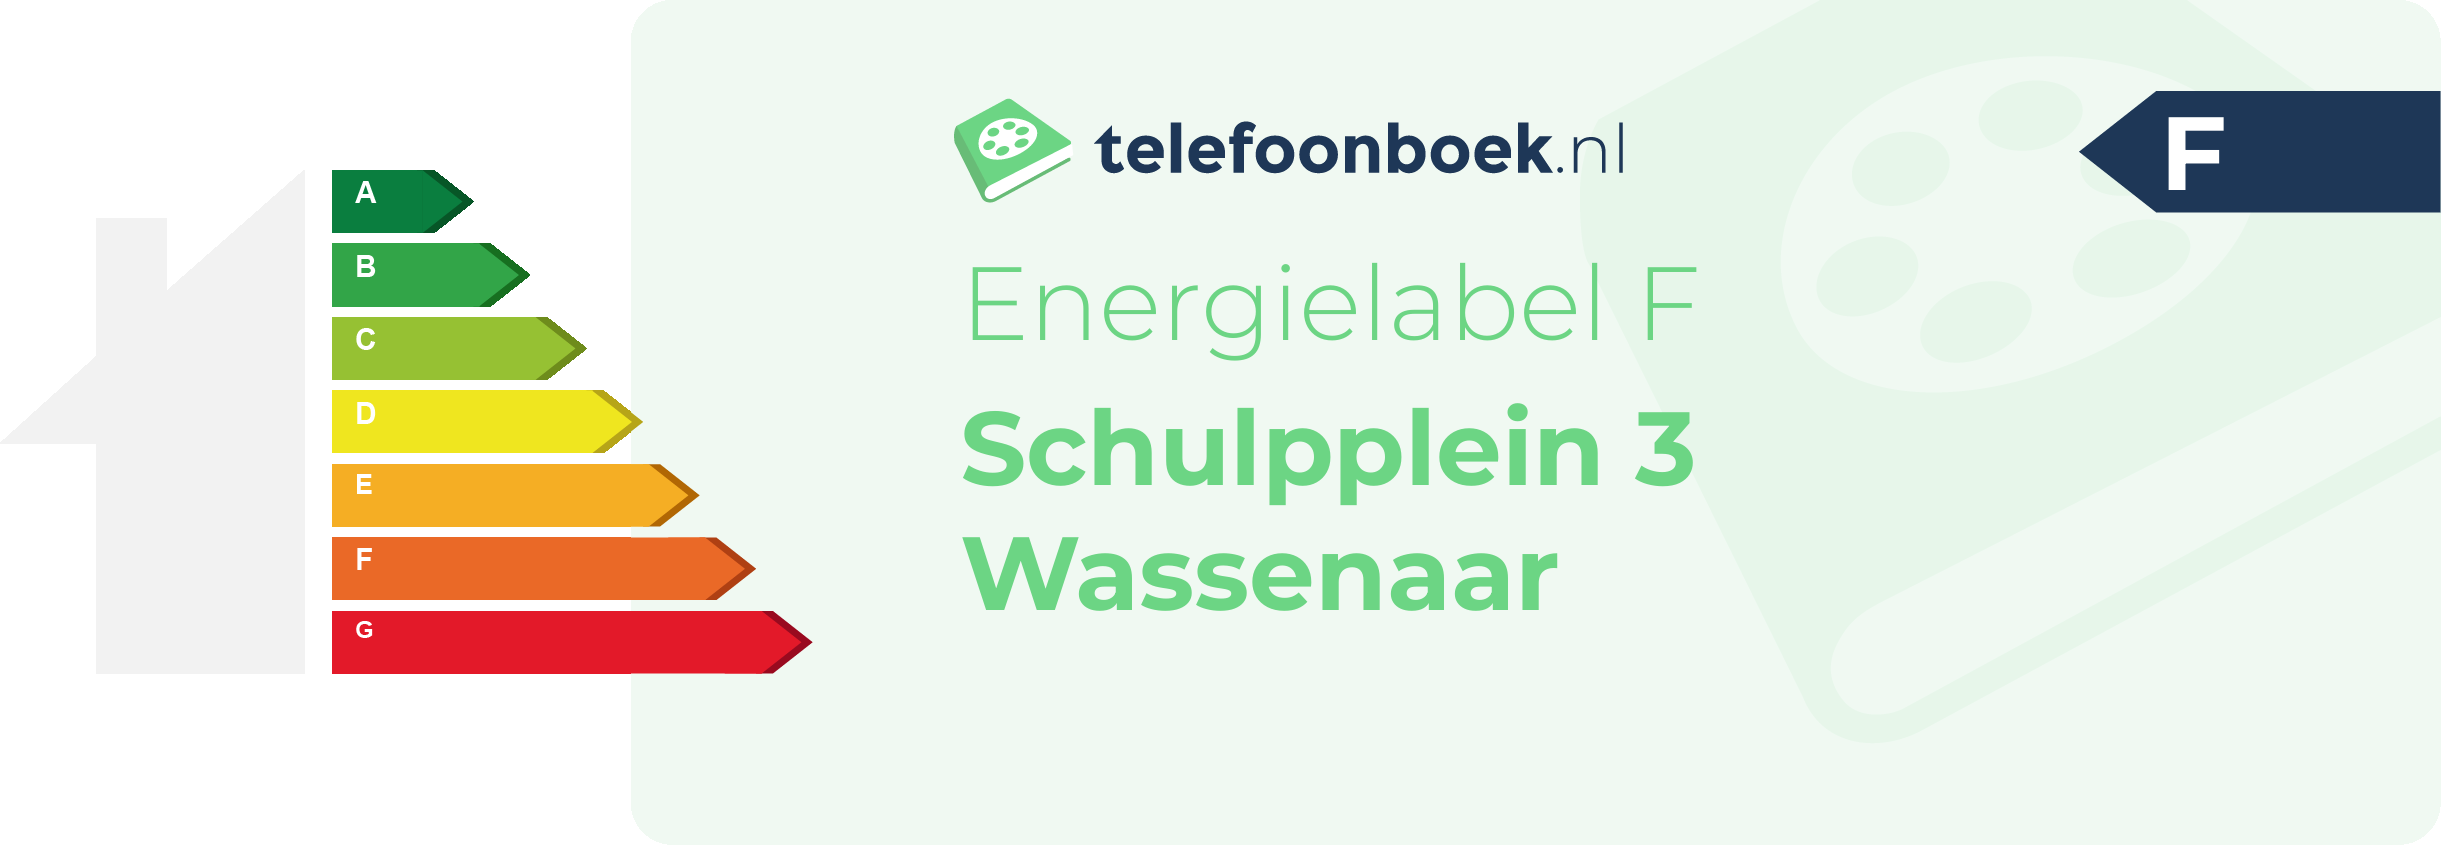 Energielabel Schulpplein 3 Wassenaar